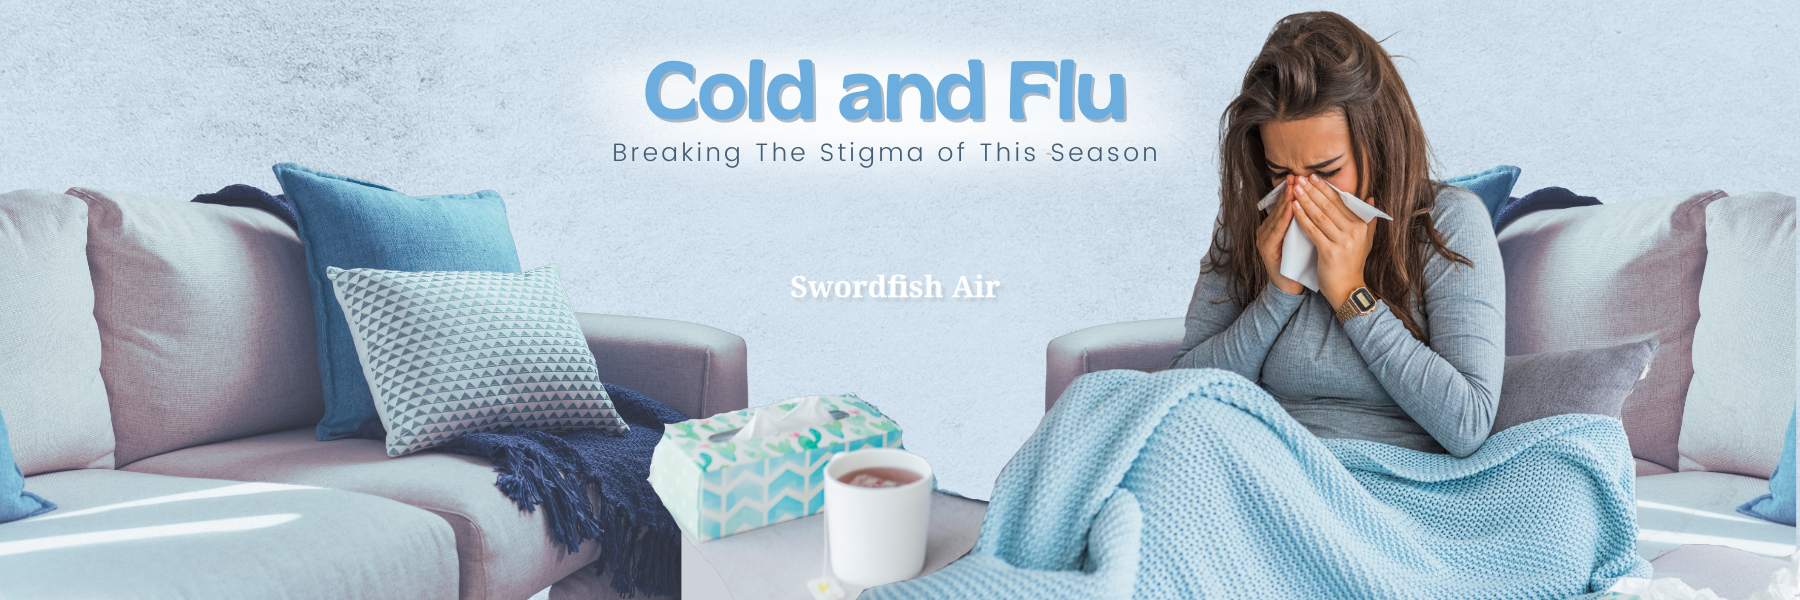 Cold and Flu Blog Header Image